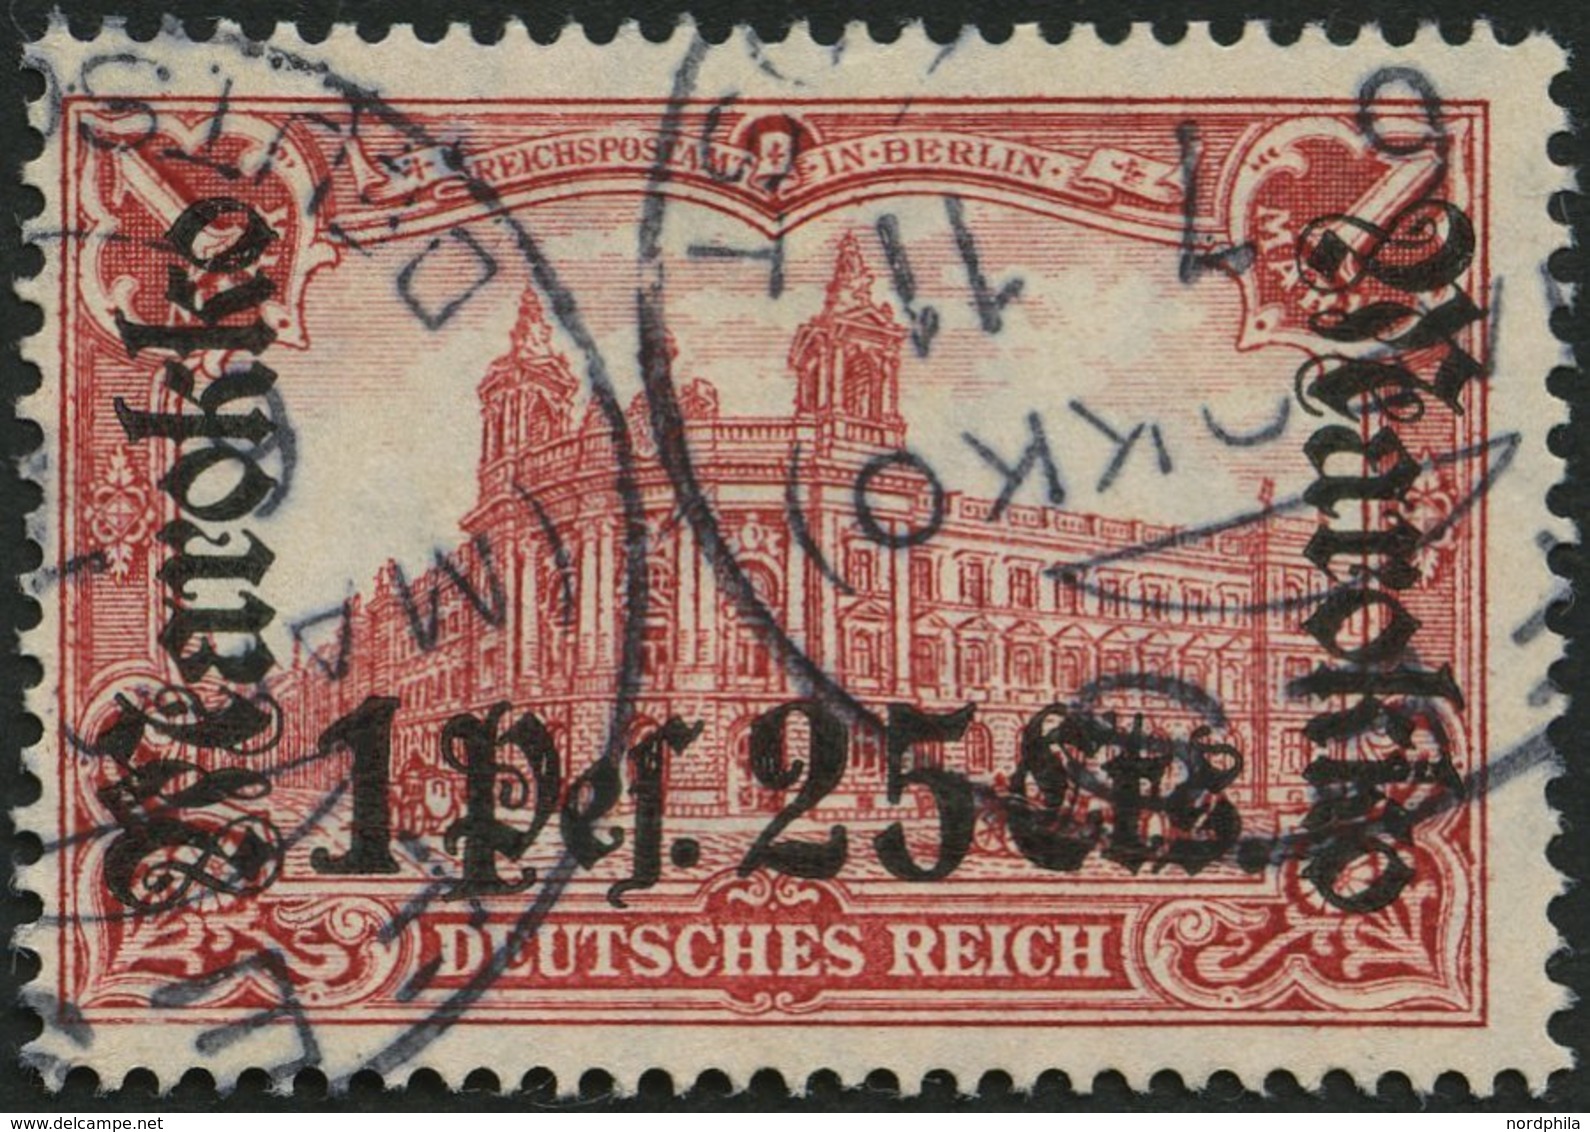 DP IN MAROKKO 55IA O, 1911, 1 P. 25 C. Auf 1 M., Friedensdruck, Stempel FES, Pracht, Gepr. W. Engel, Mi. (80.-) - Marocco (uffici)